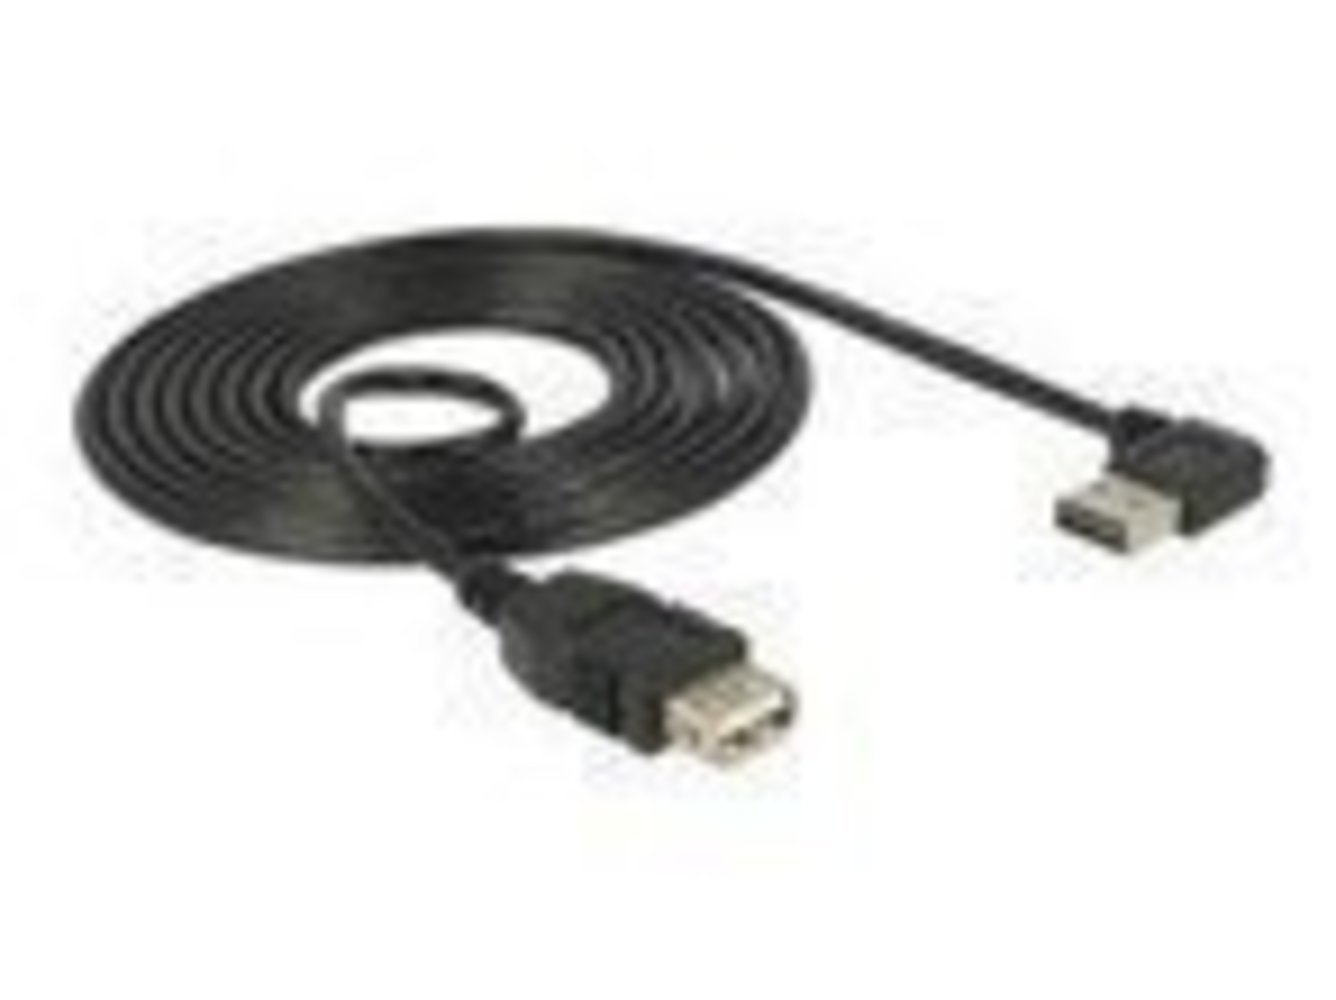 DELOCK Kabel EASY USB 2.0-A linksrechts gewinkelt Stecker > USB 2.0-A Buchse 1 m - Hochwertiges USB 2.0-A Kabel, linksrechts gewinkelt, 1 m Länge